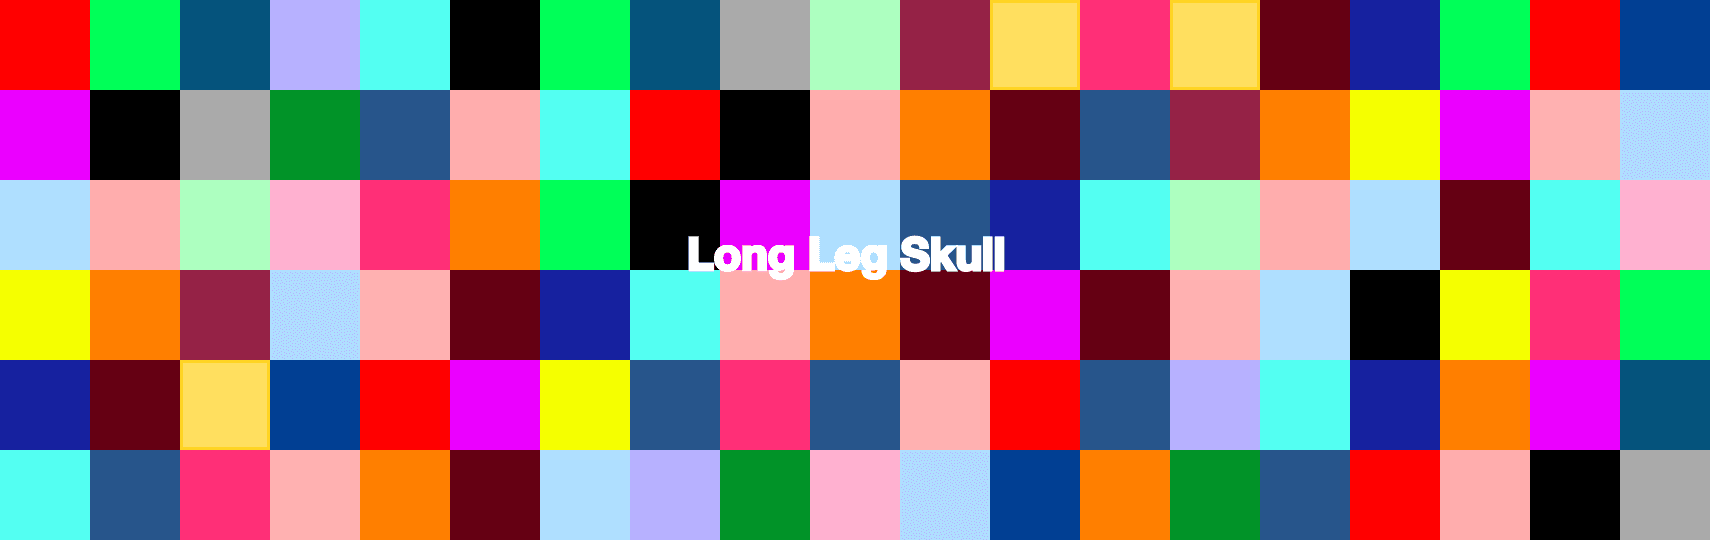 LongLegSkull 横幅